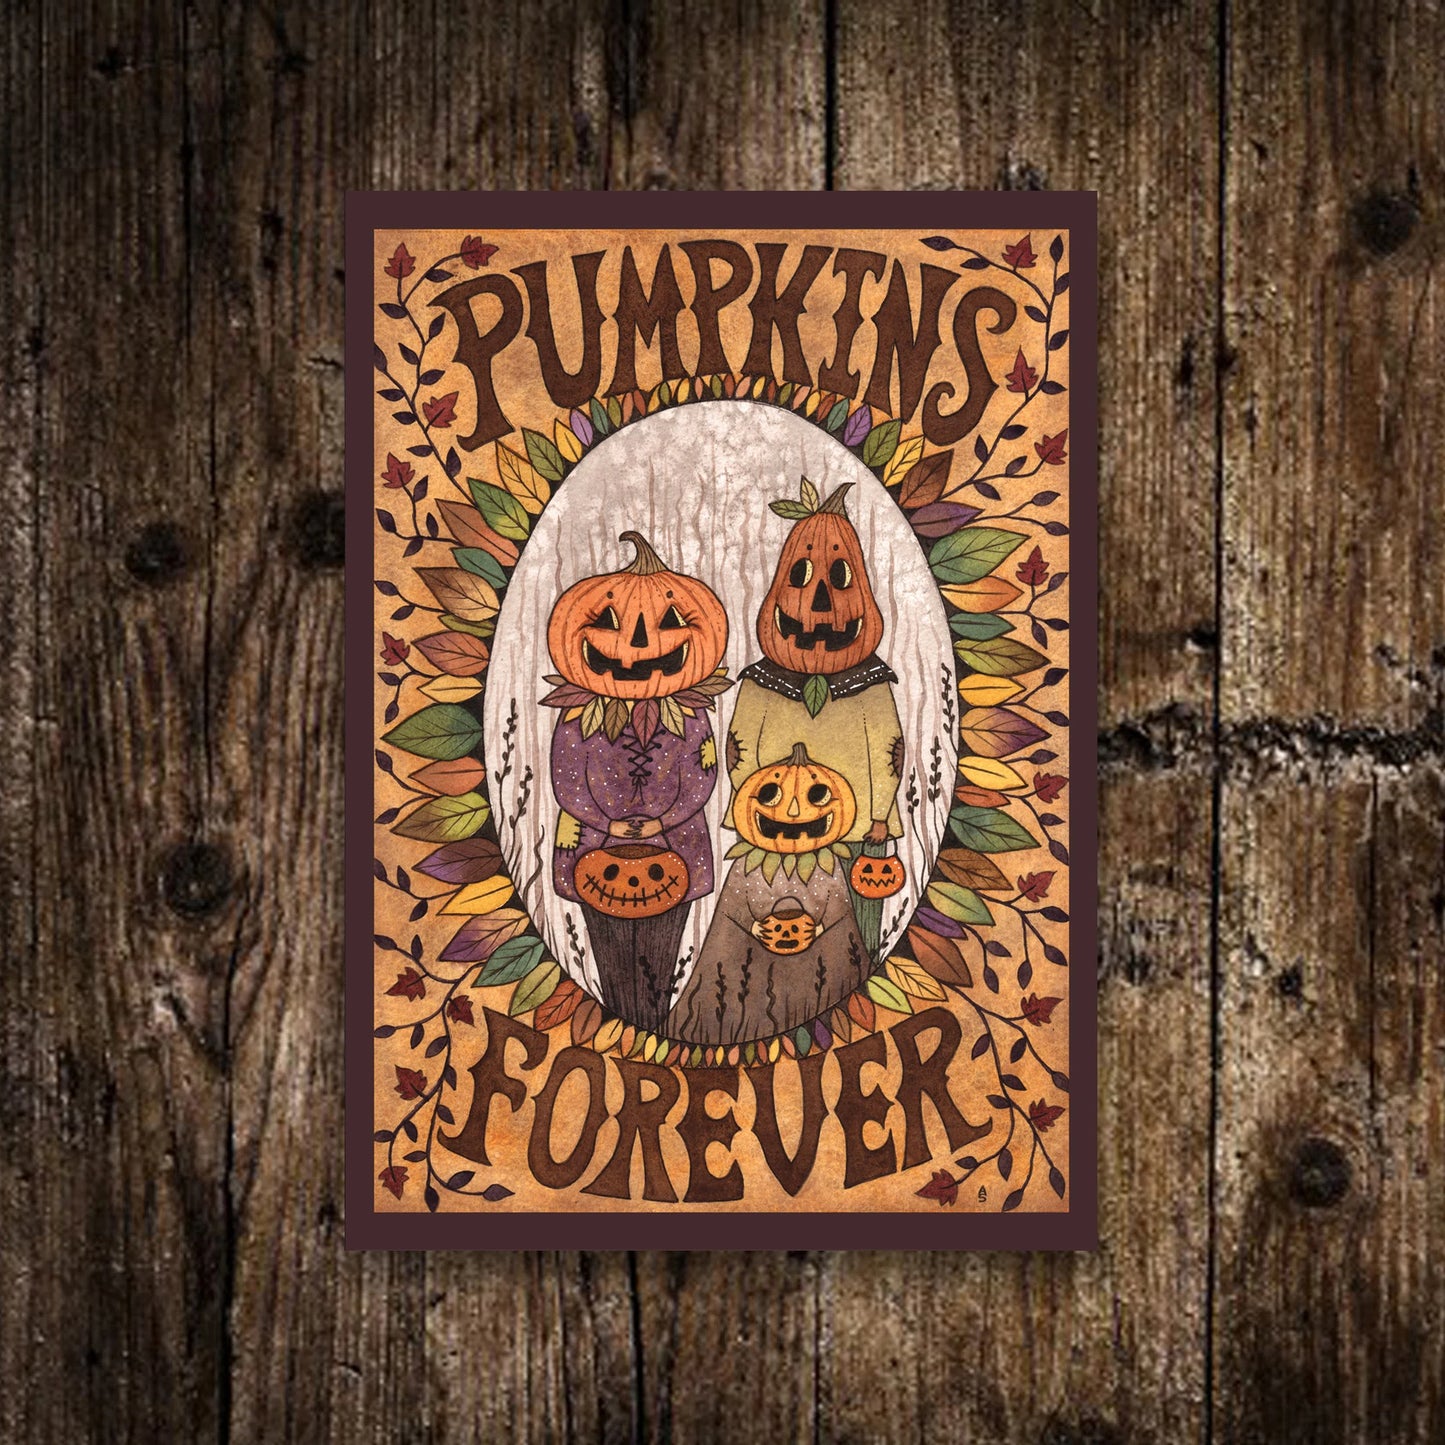 Mini Pumpkins Forever Print - Small A6 Pumpkin Family Illustration - Mini pumpkin Patch People Postcard Print - Halloween Trick Or Treat Art